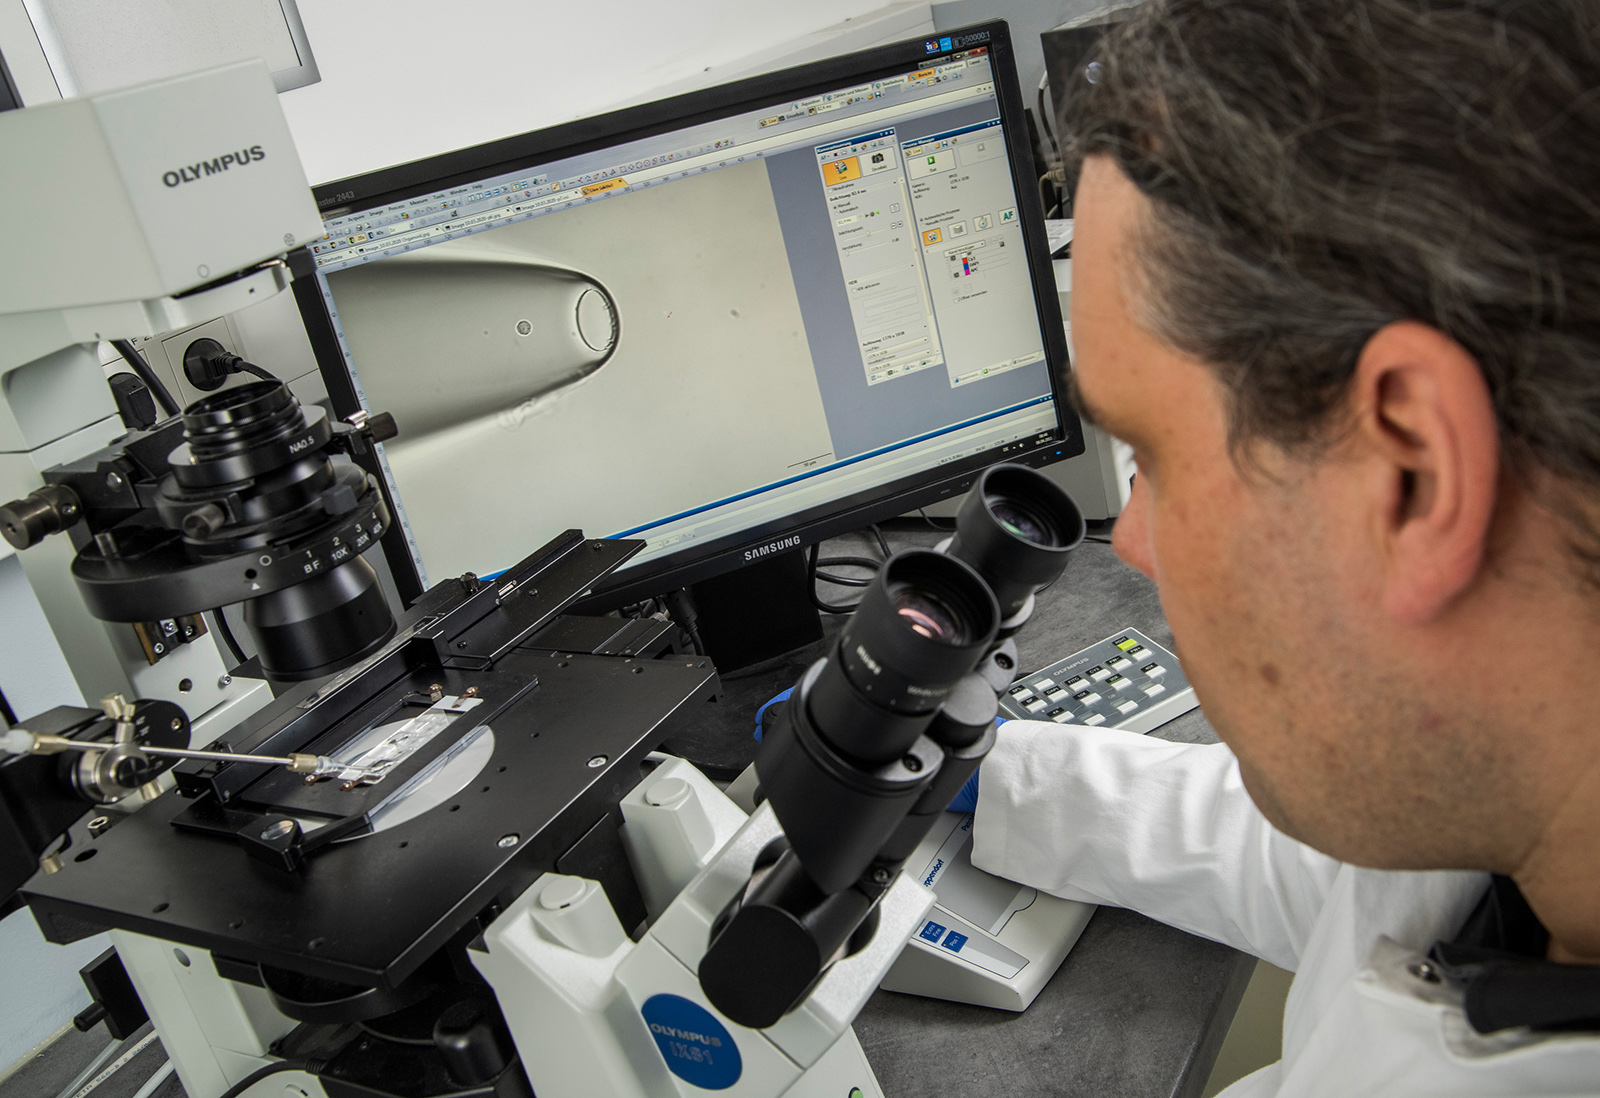 Am Mikroskop isoliert Bernhard Polzer einzelne Krebszellen, welche er zuvor aus Patientenmaterial gewonnen hat. Auf dem Monitor erkennt man die Glaskapillare mit der Zelle, die er im Vorfeld als Krebszelle identifiziert und danach vom Objektträger aufgesaugt hat. 